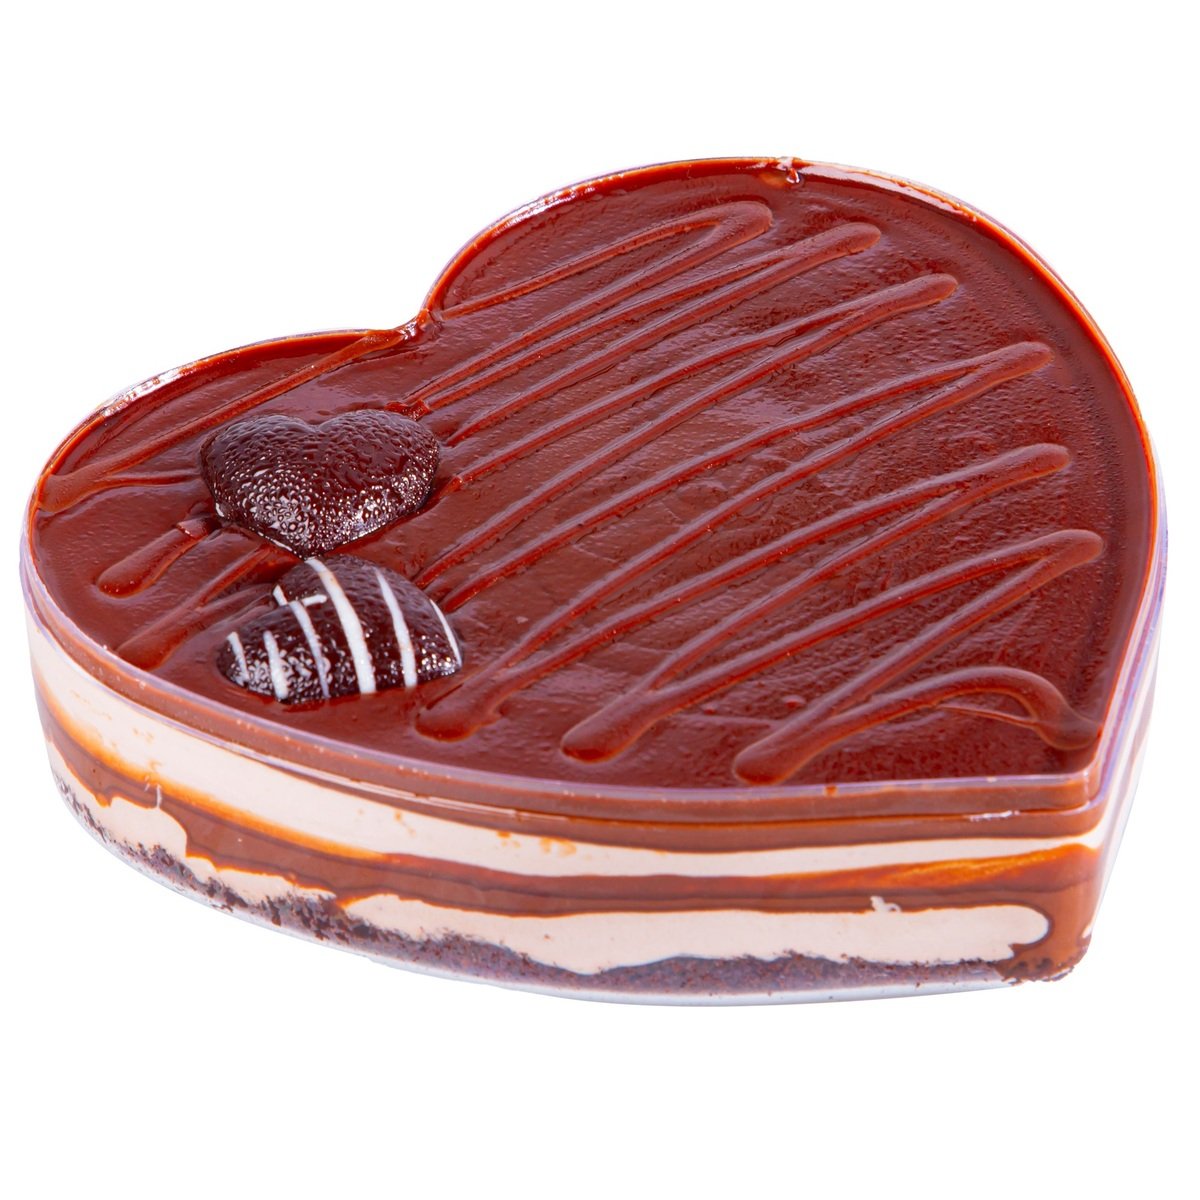 كيكة شوكولاتة على شكل قلب 600 جم